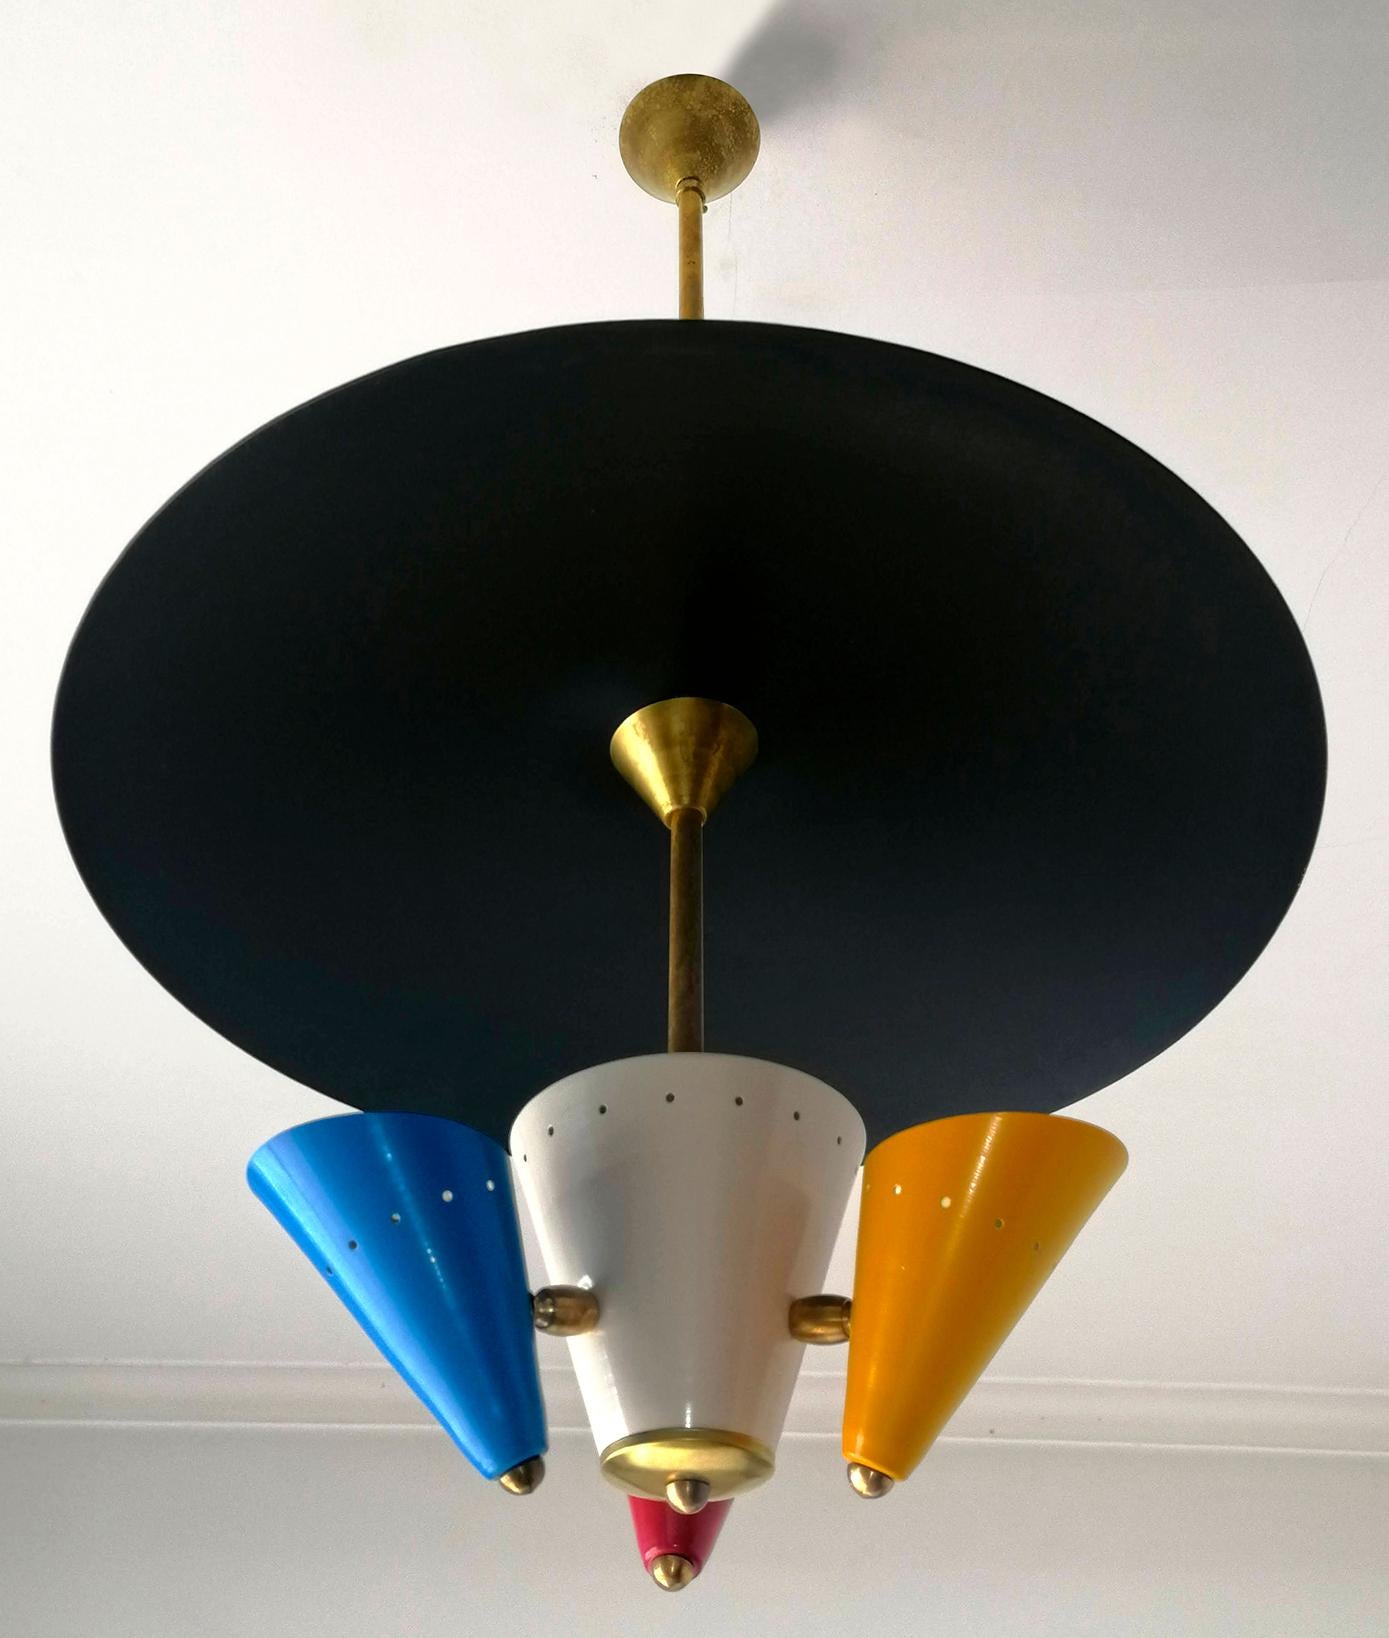 Italian Stilnovo Modernist Flying Saucer Sputnik Chandelier in Black, Red, Blue & Yellow For Sale